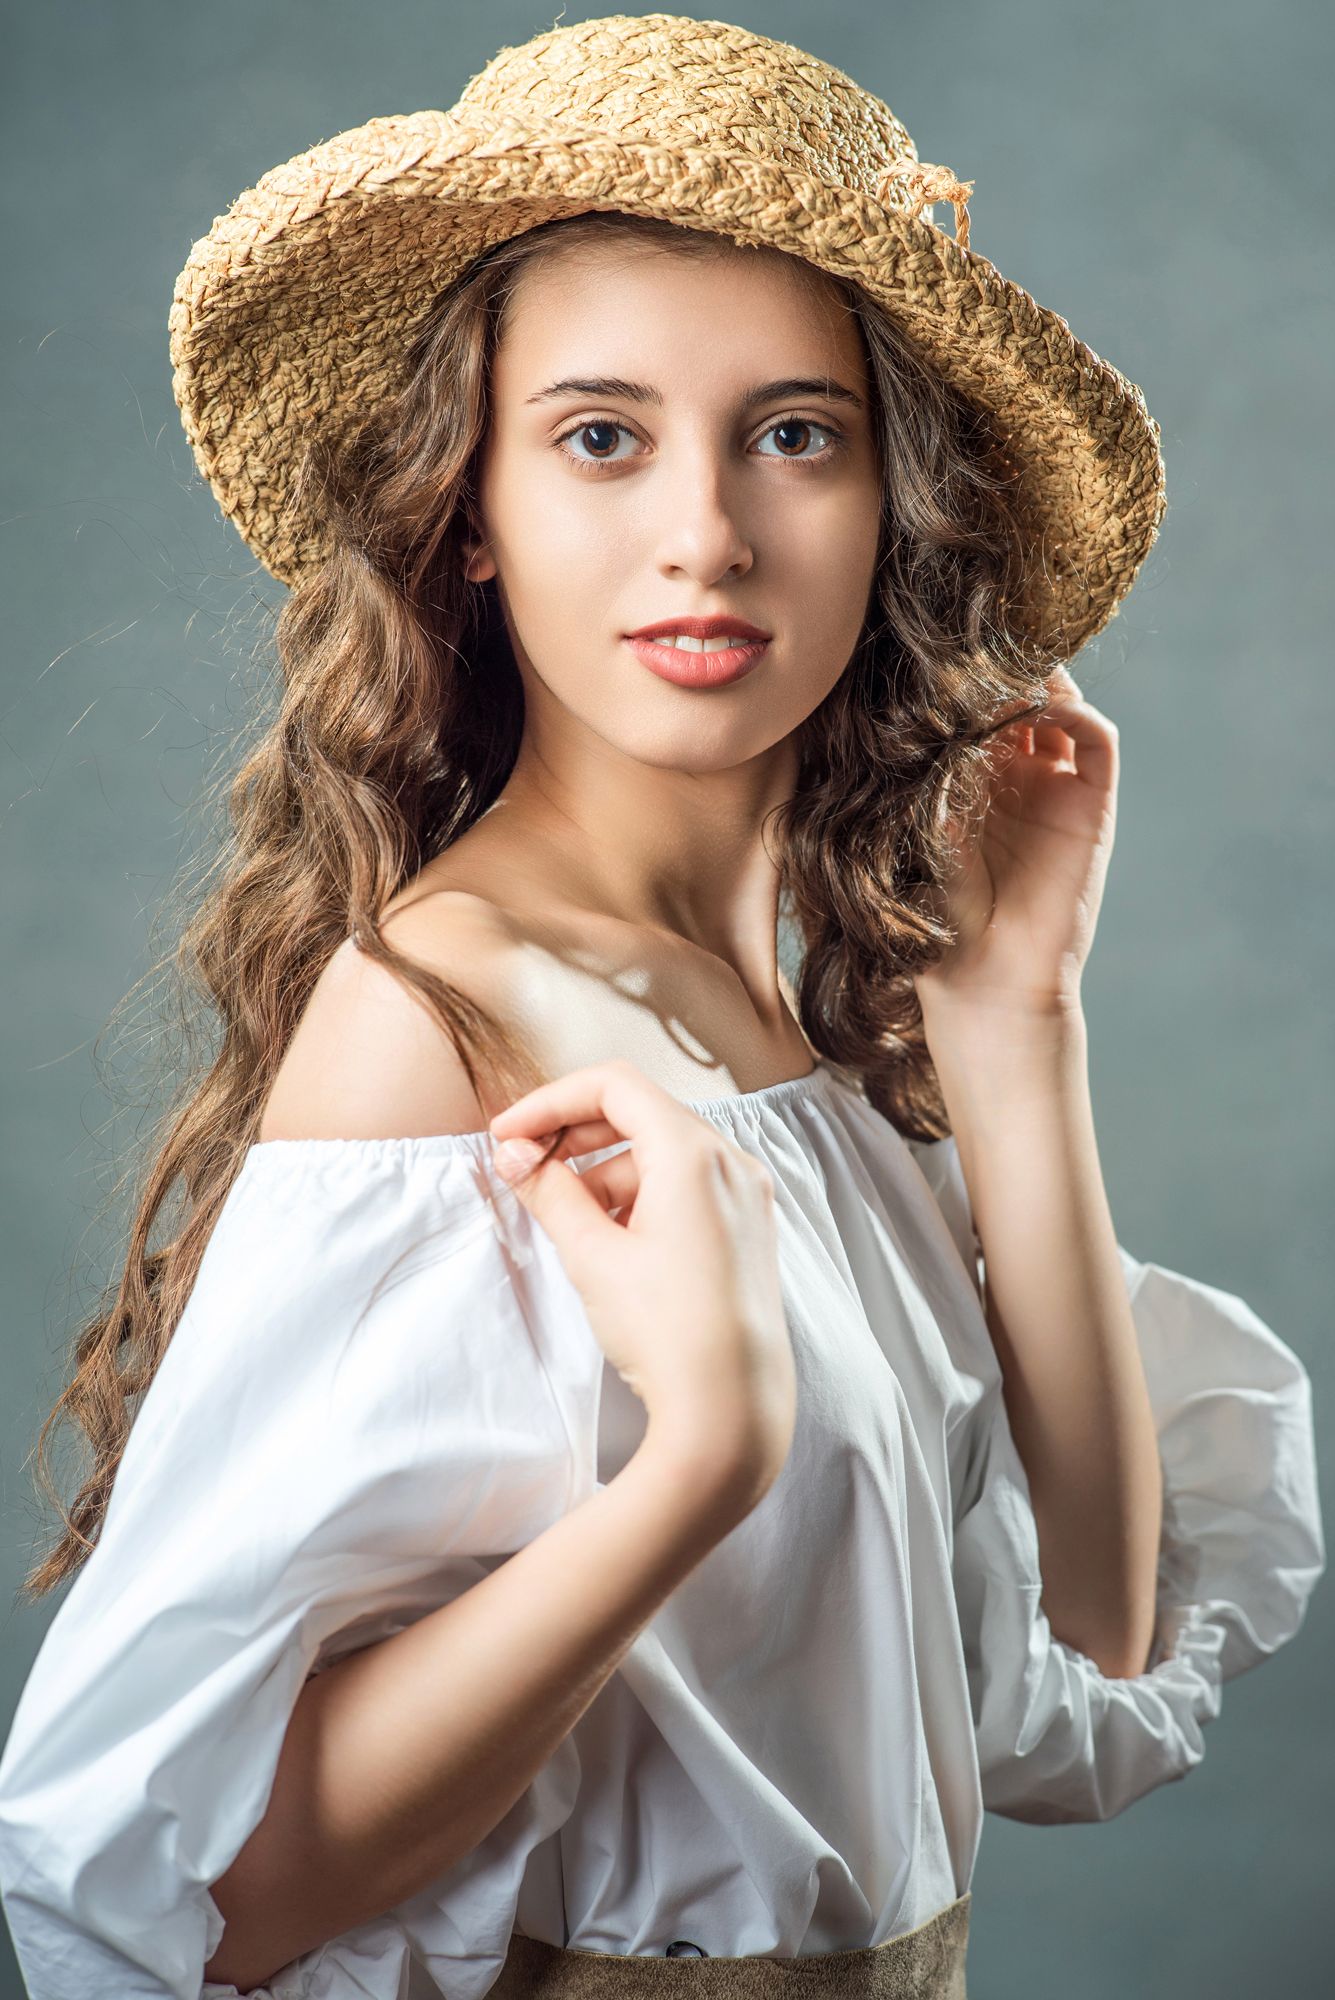 женский портрет, девушка в шляпе, летний потрет, Мурр Маори